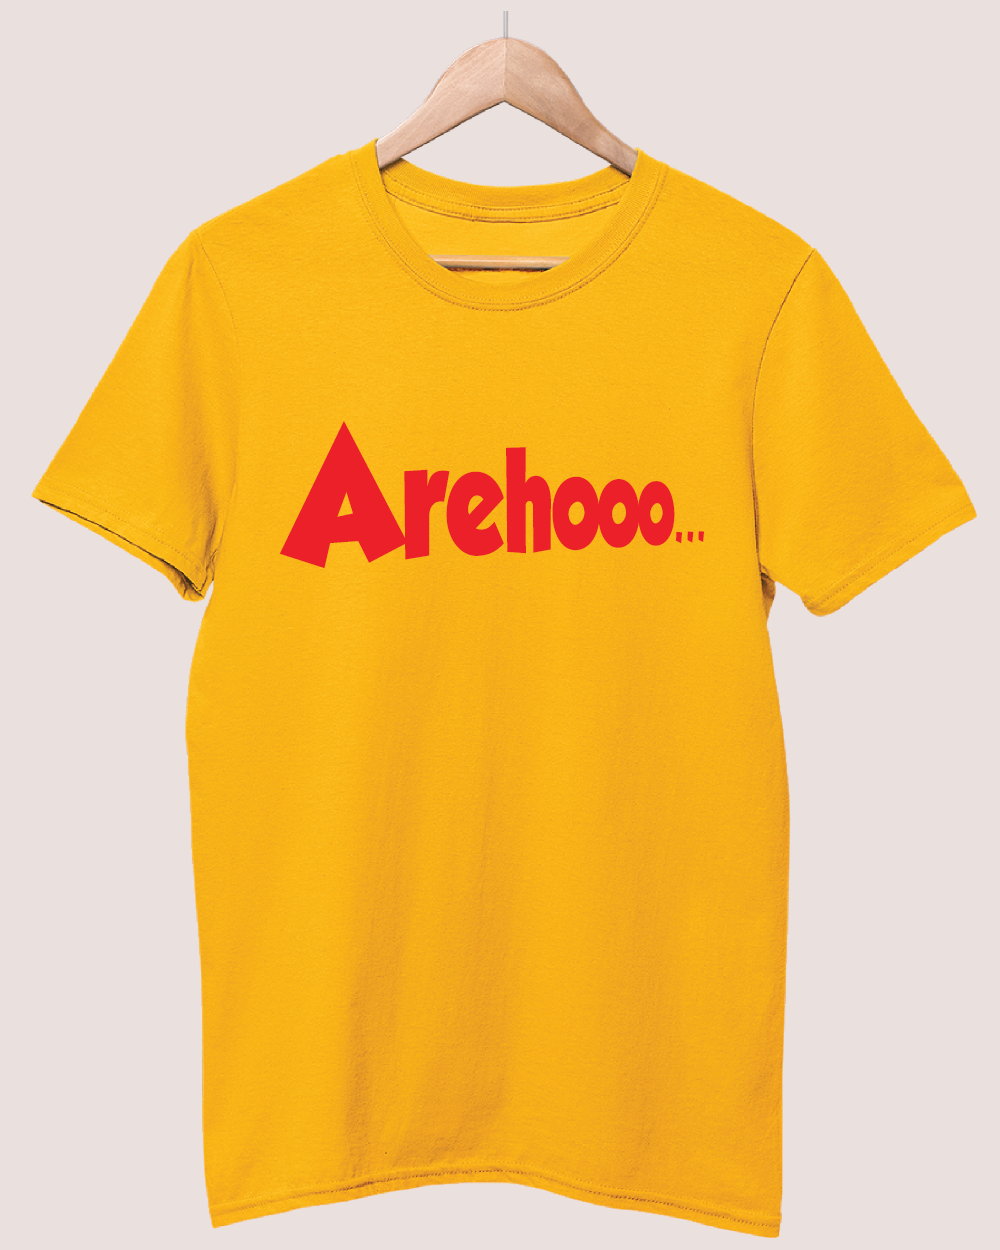 Arehoo T-shirt